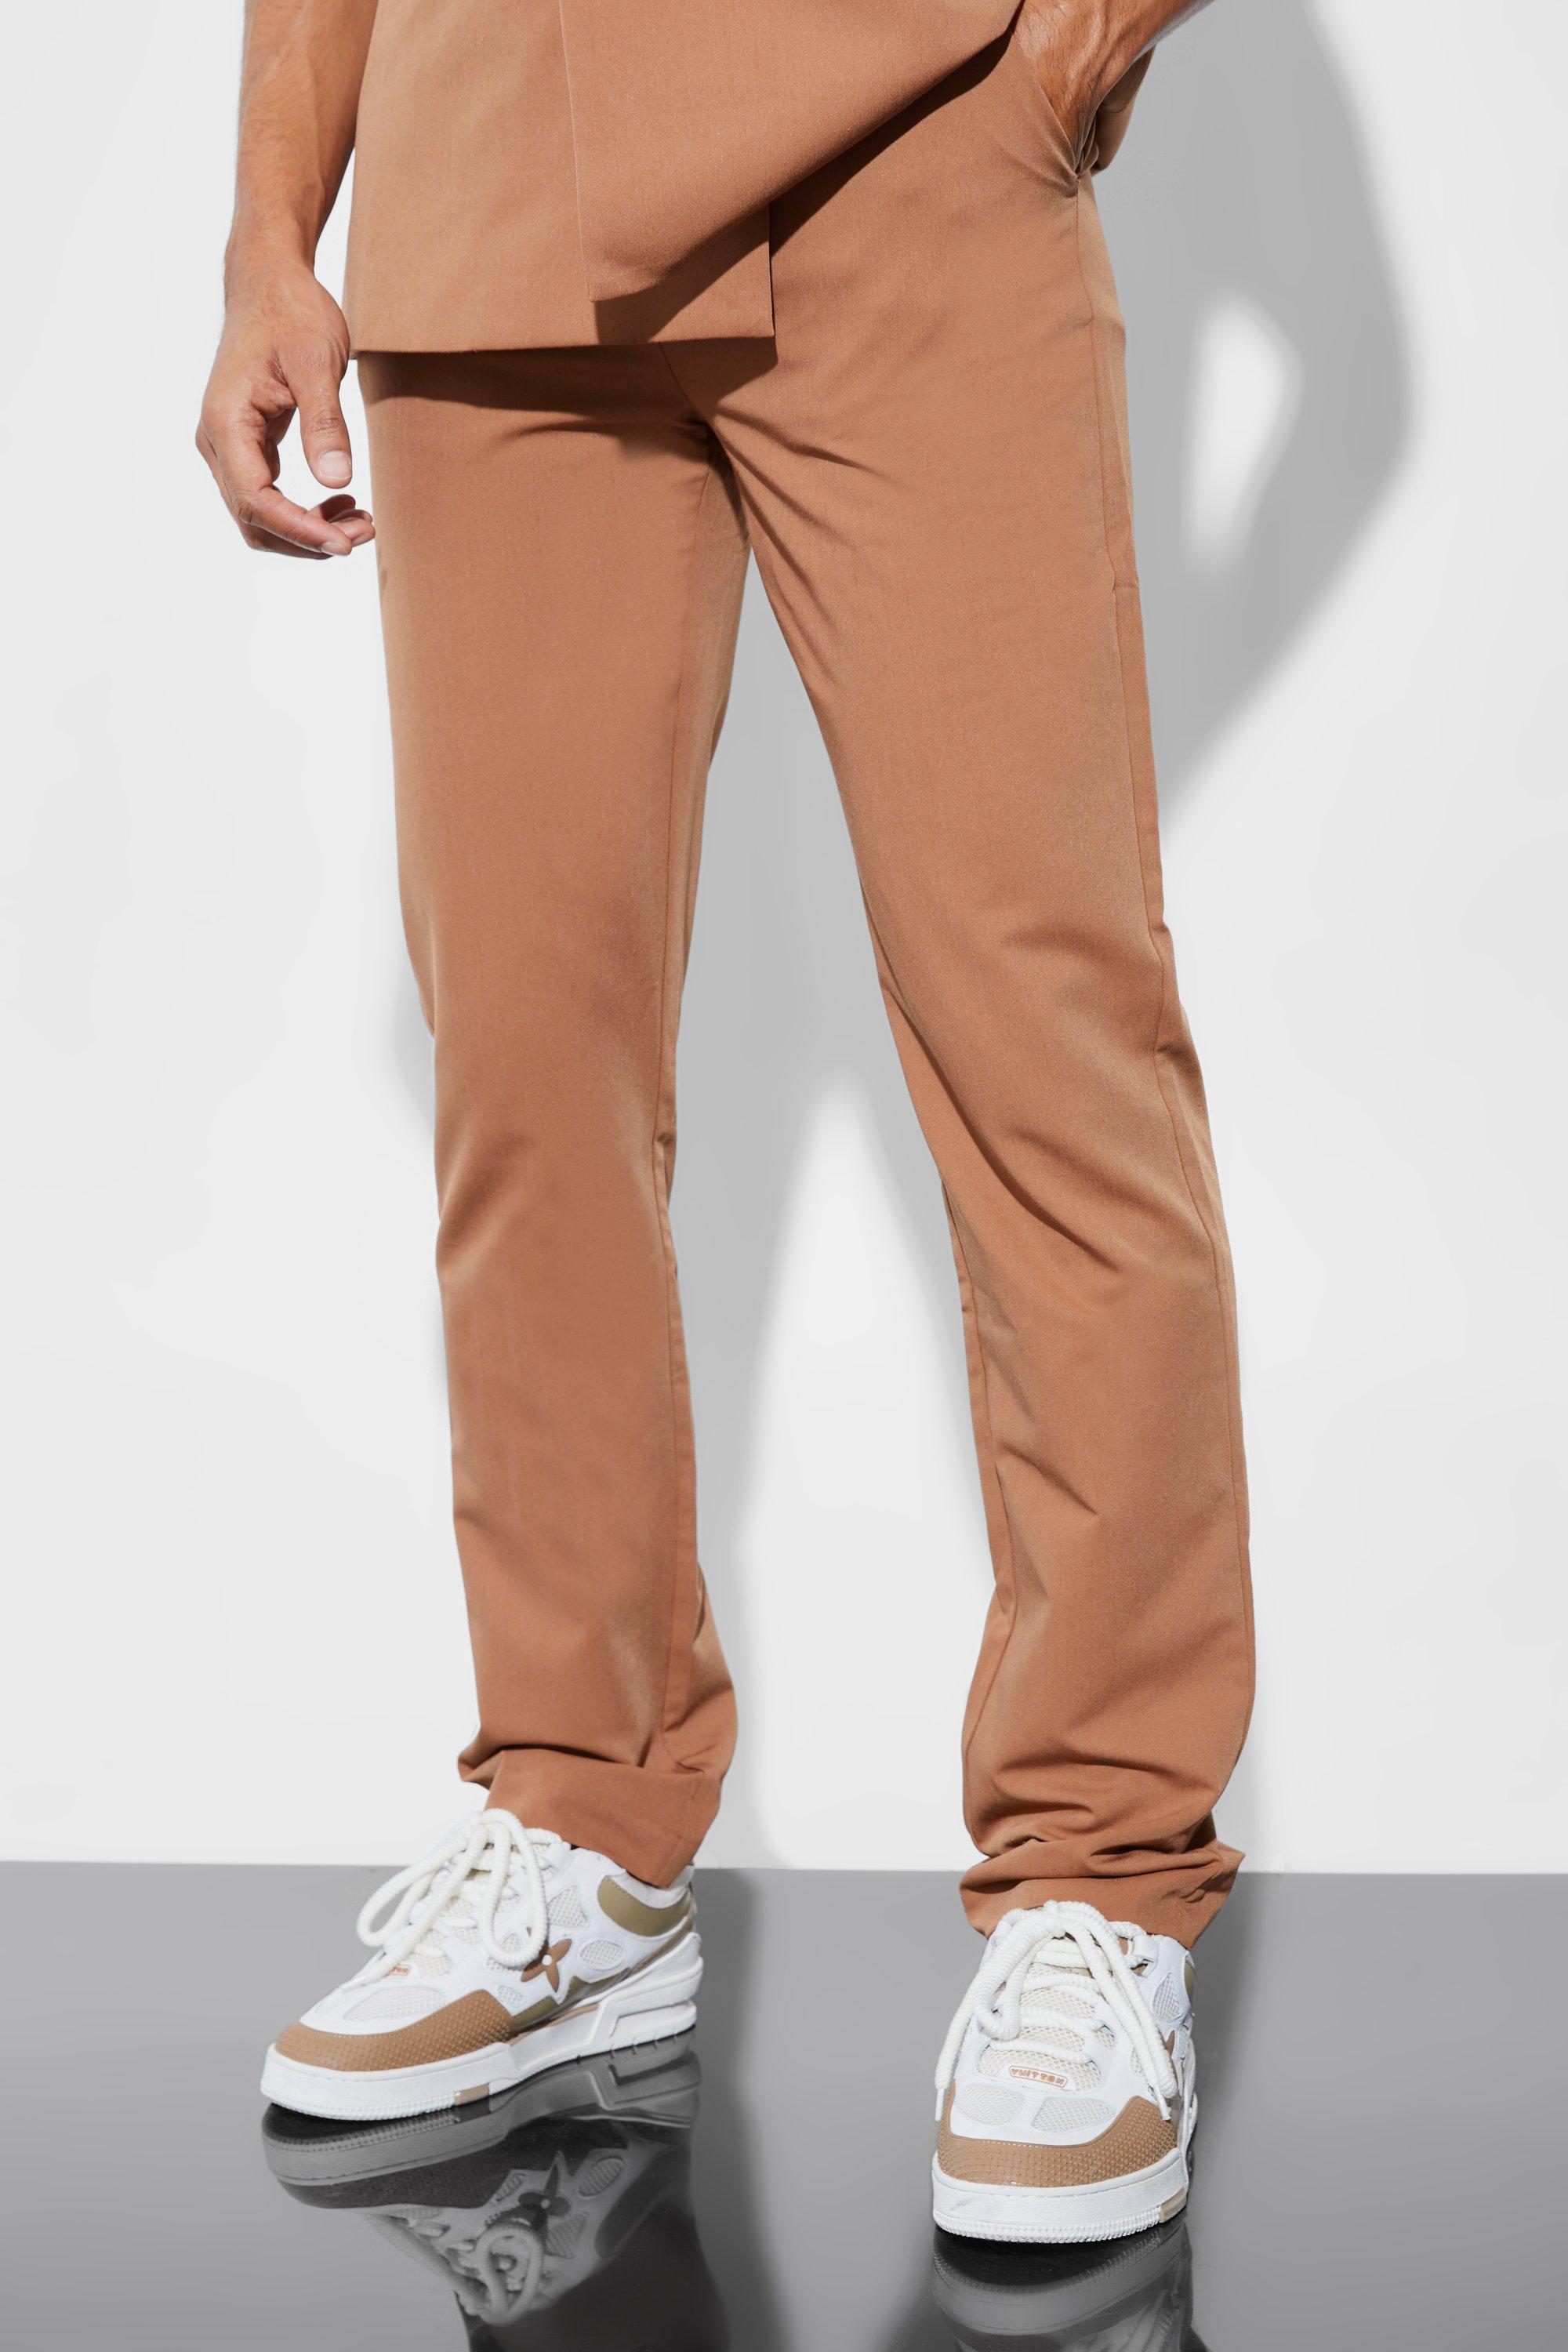 pantalon de costume droit homme - brun doré - 28r, brun doré